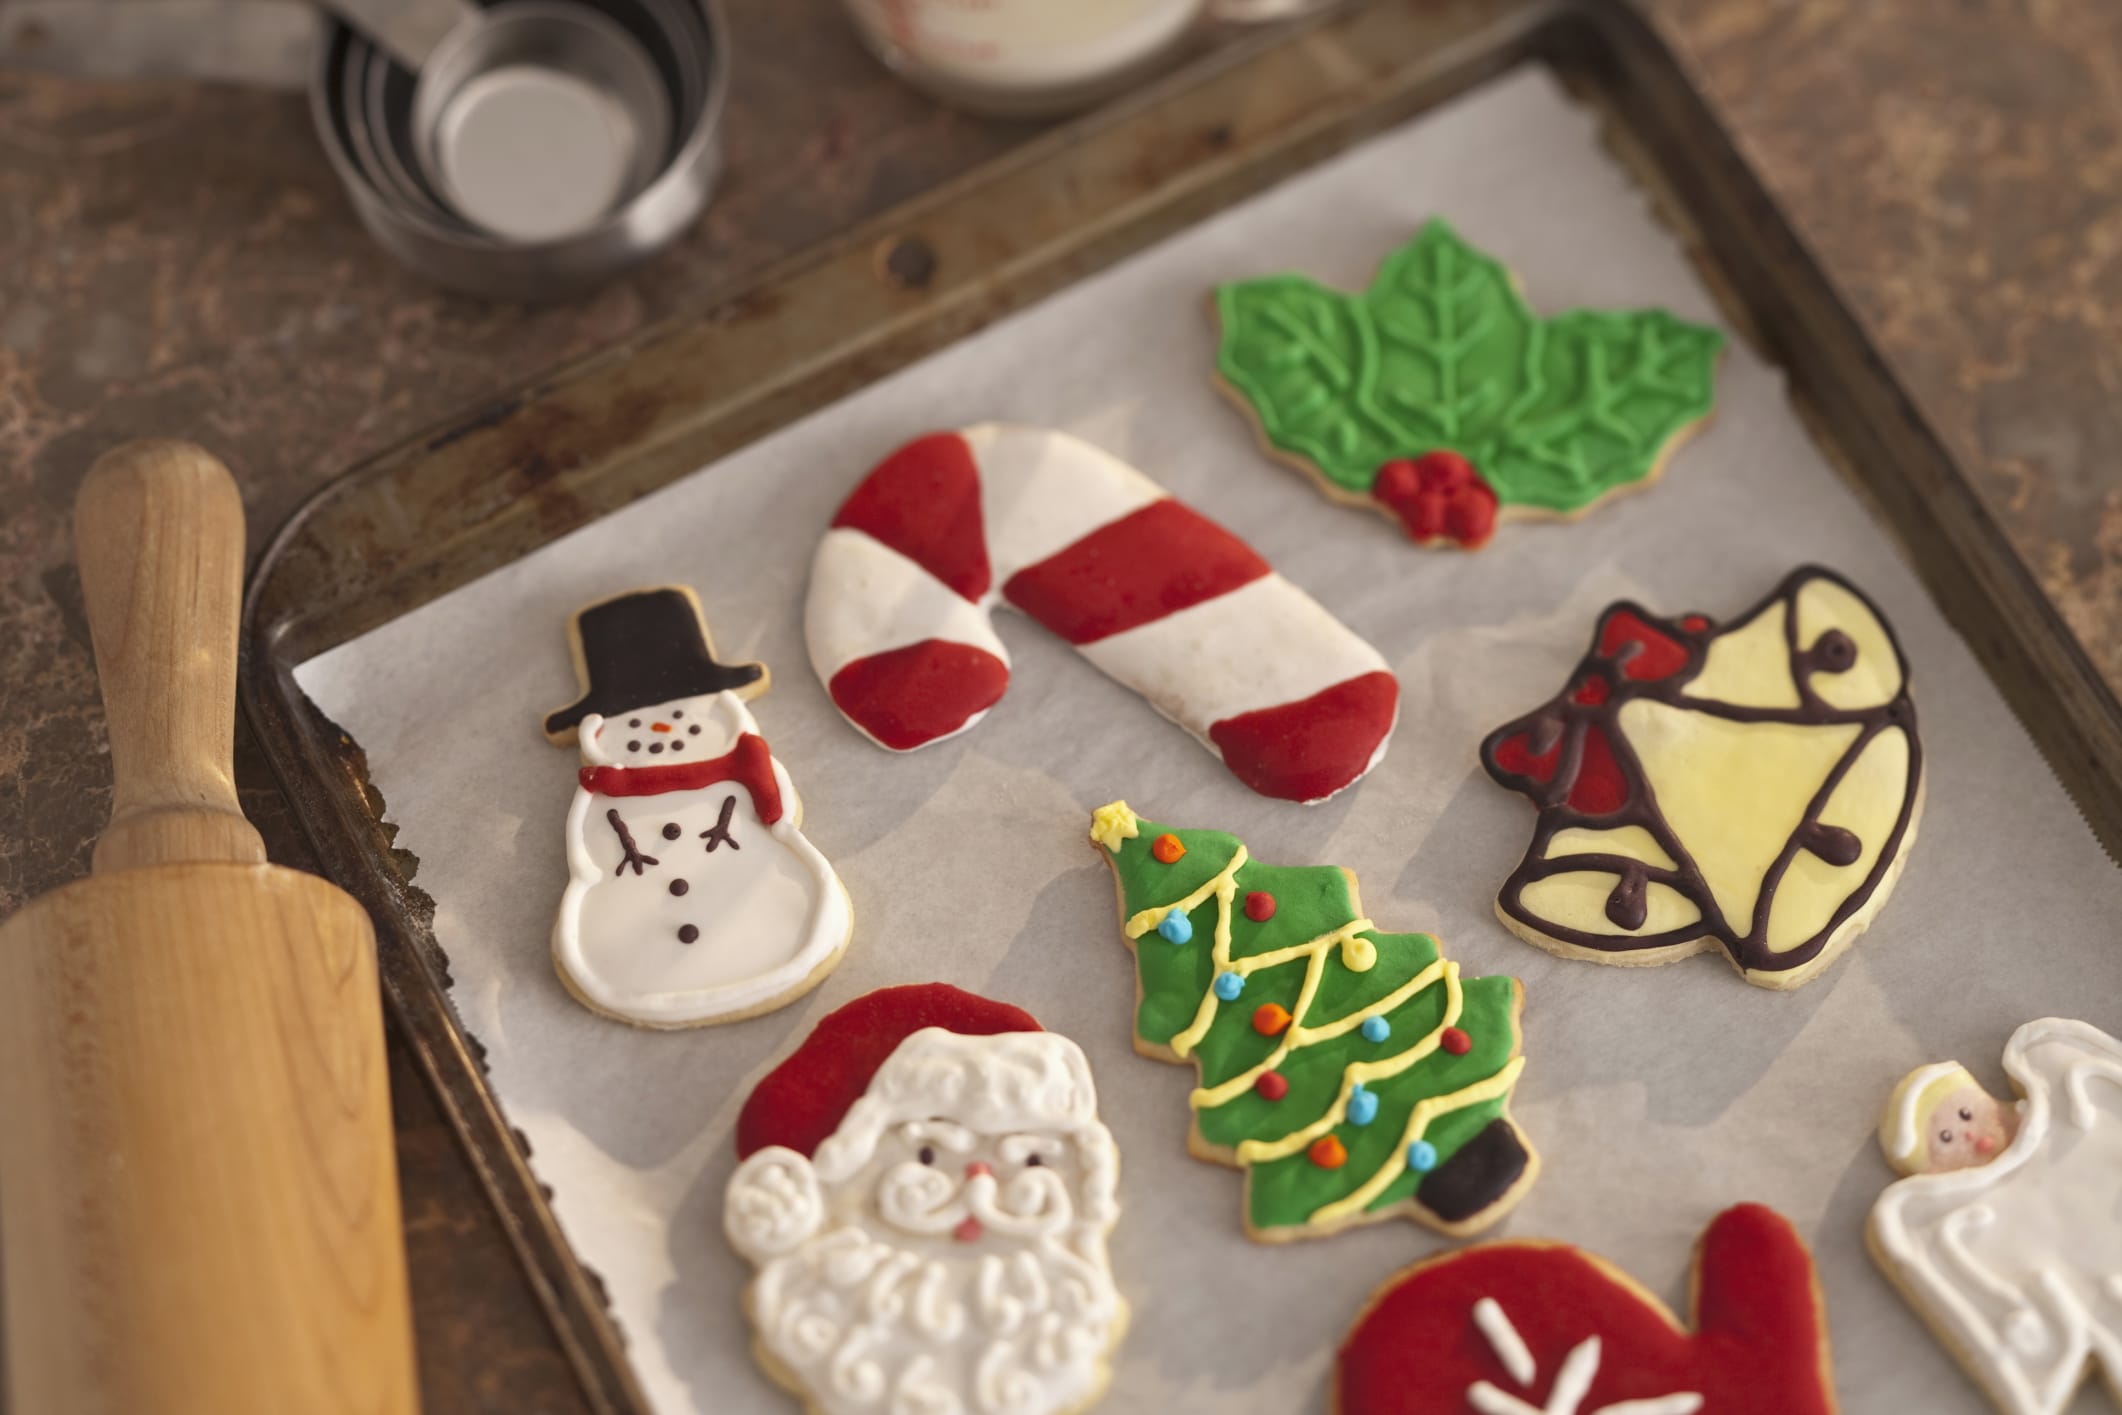 Biscotti Decorati Natale.Regali Di Natale Fai Da Te I Biscotti Di Pasta Frolla Con La Glassa